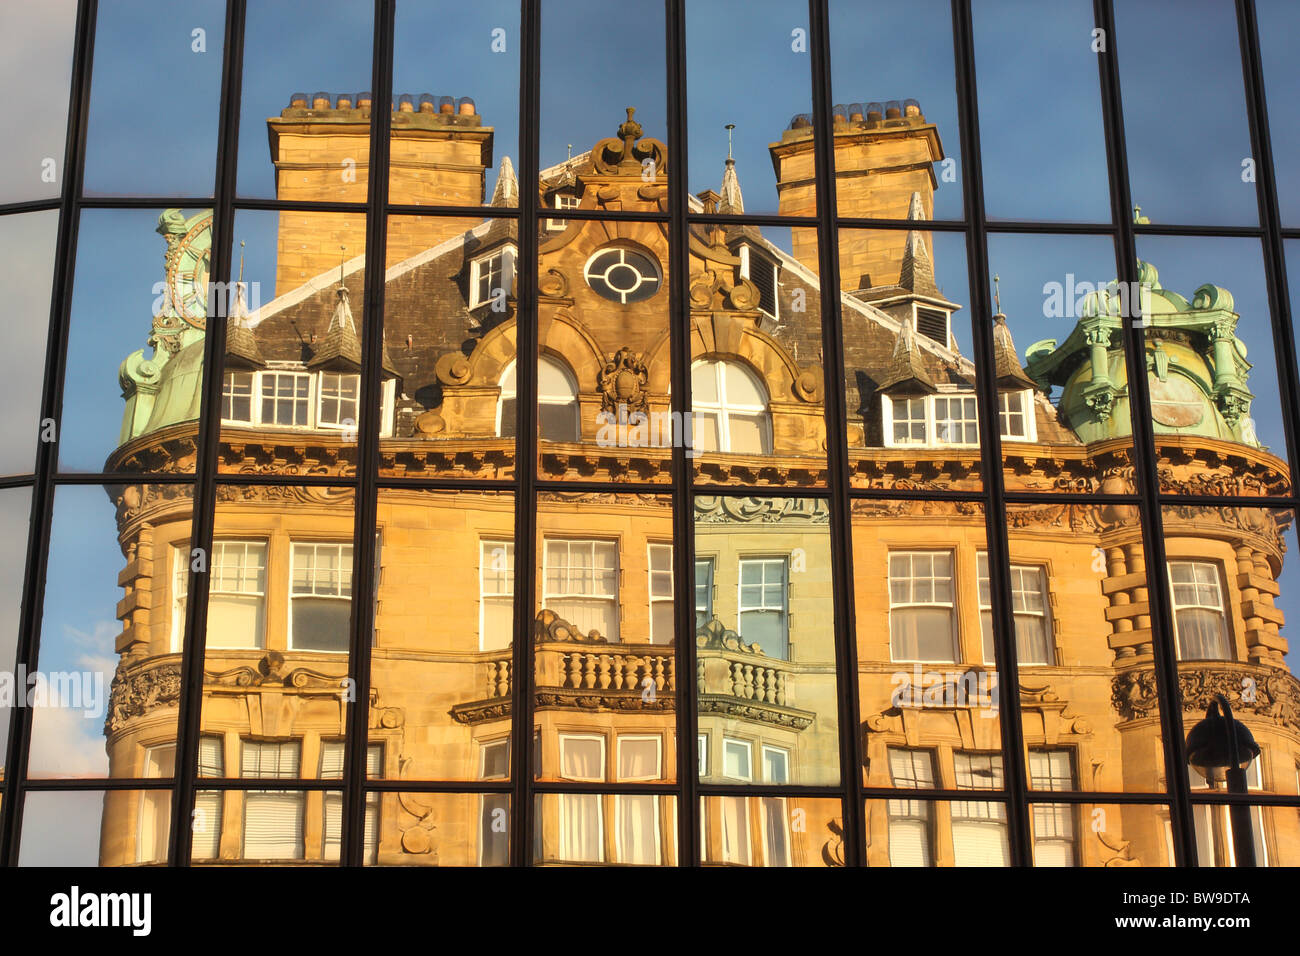 Une réflexion par l'Eldon Square verre d'Emerson à l'édifice Chambers à Newcastle, Tyne et Wear, Angleterre. Banque D'Images